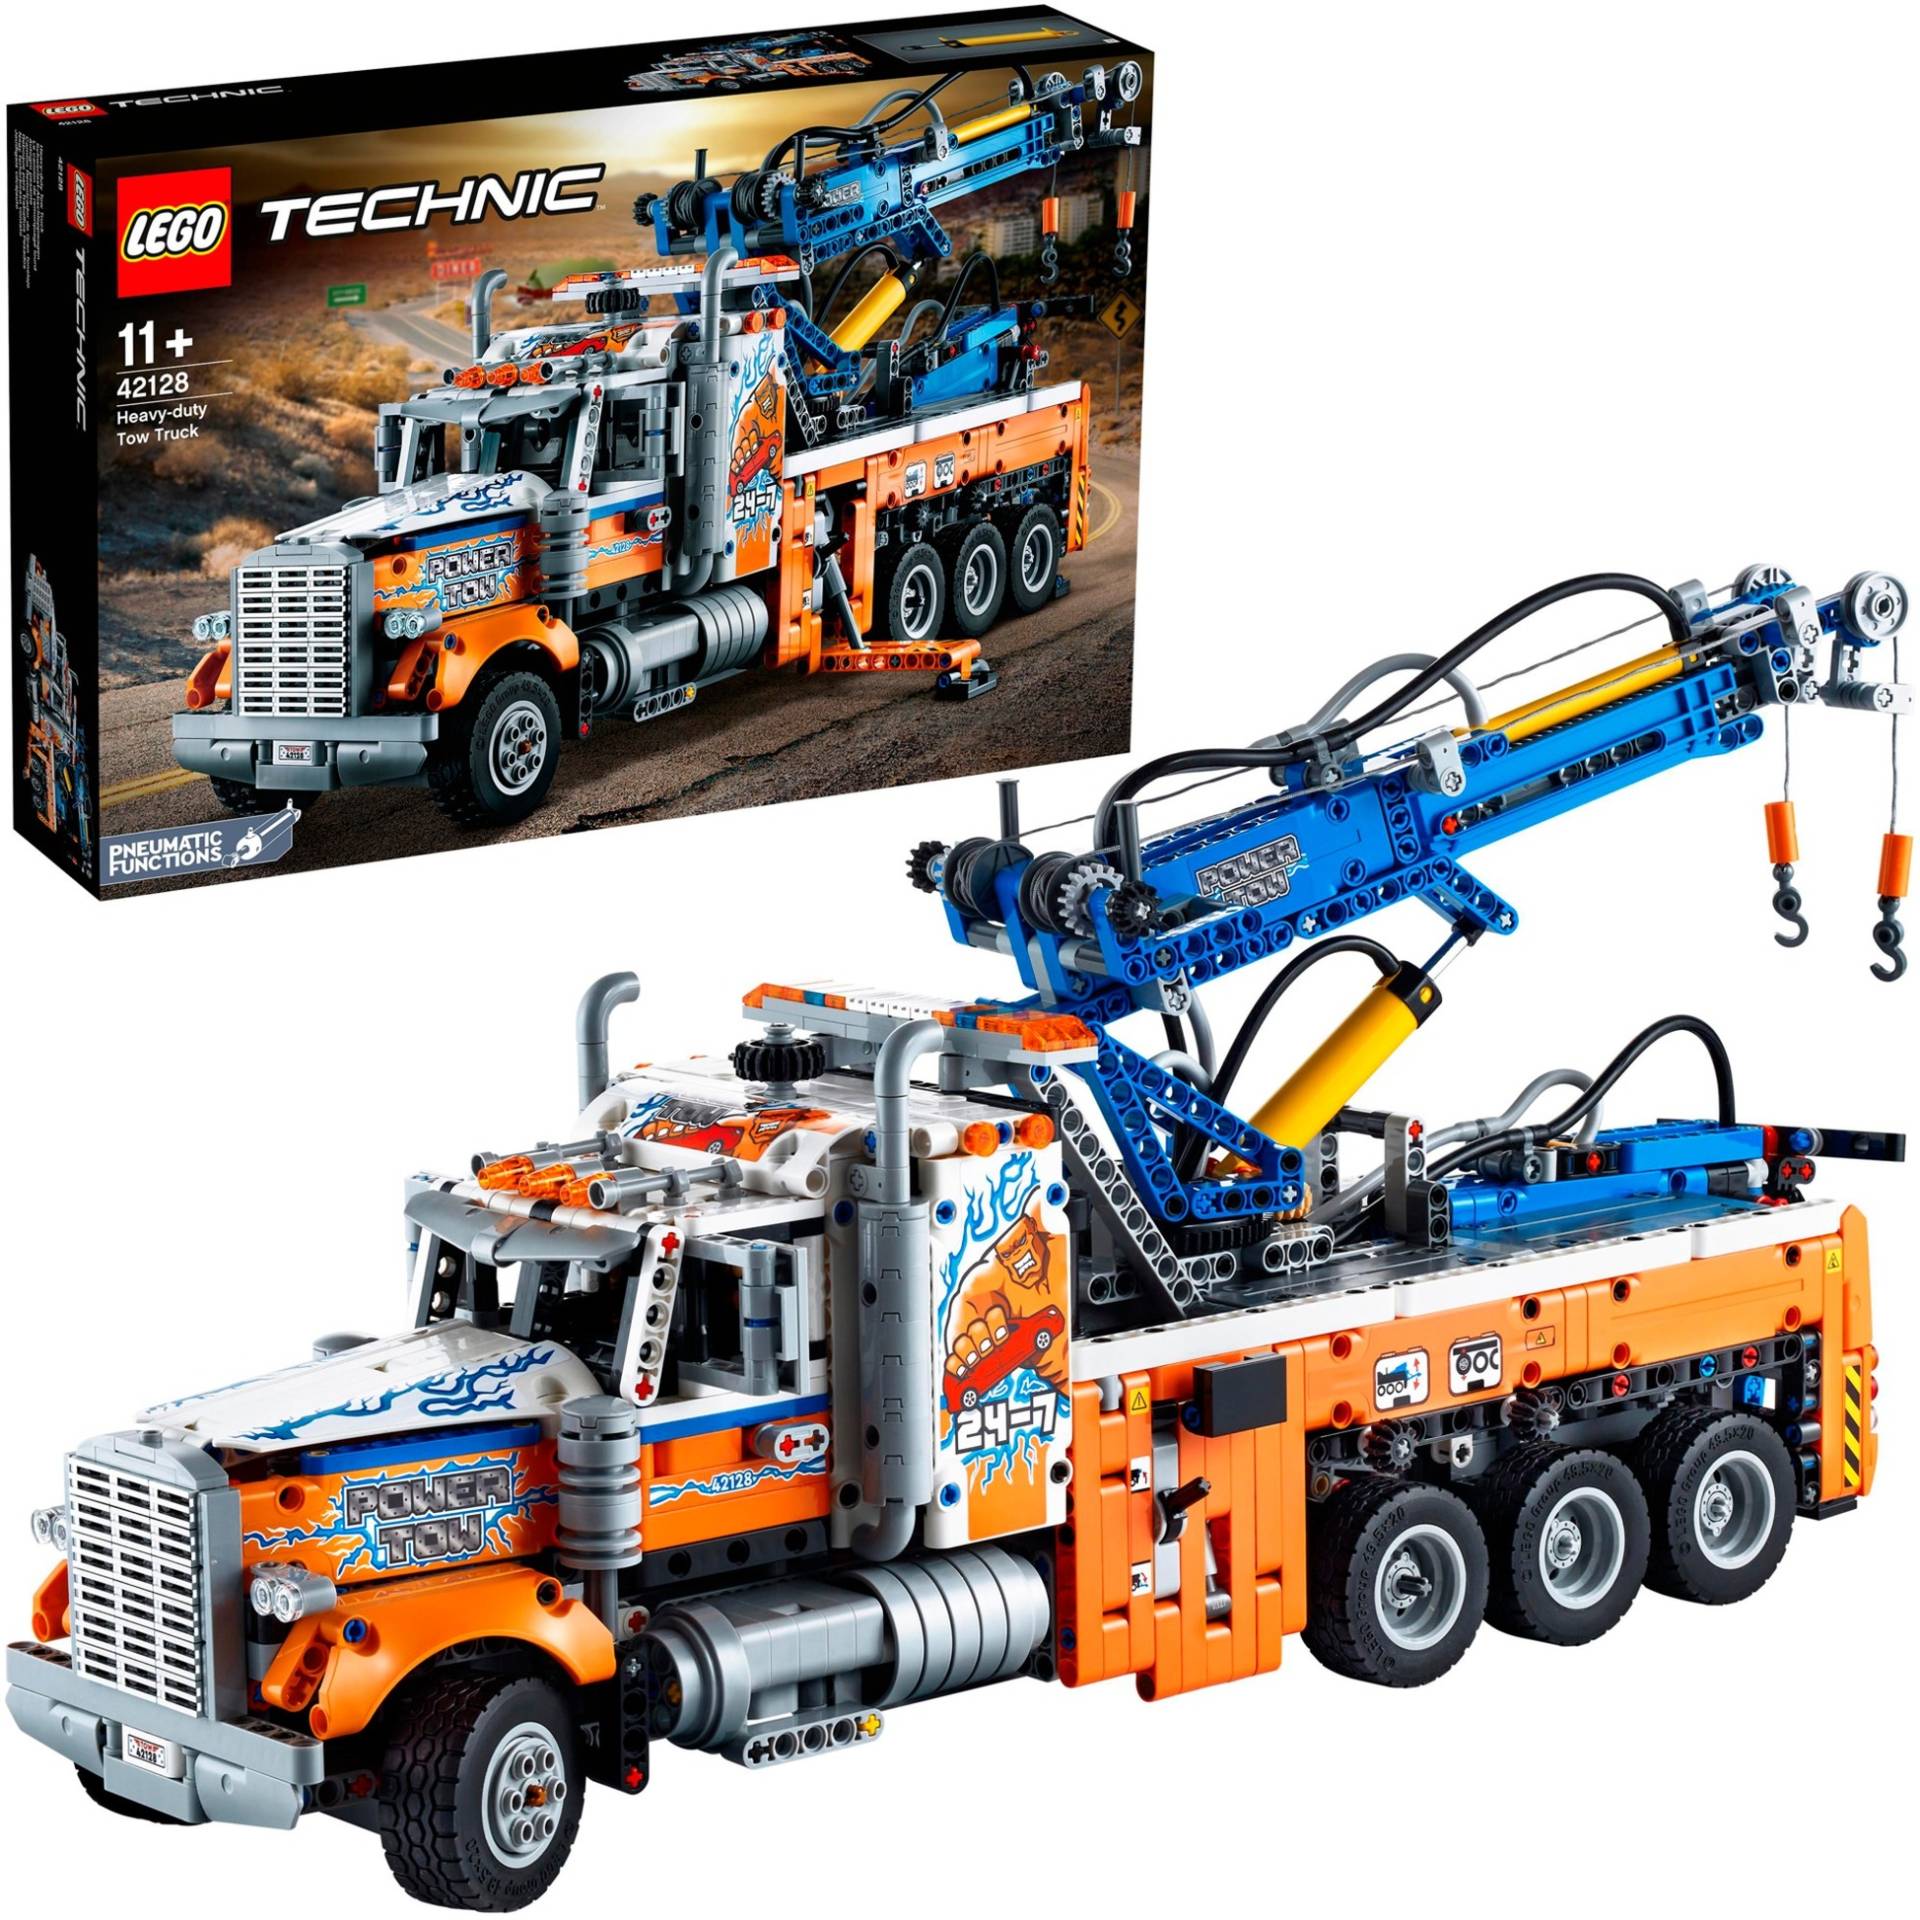 42128 Technic Schwerlast-Abschleppwagen, Konstruktionsspielzeug von Lego